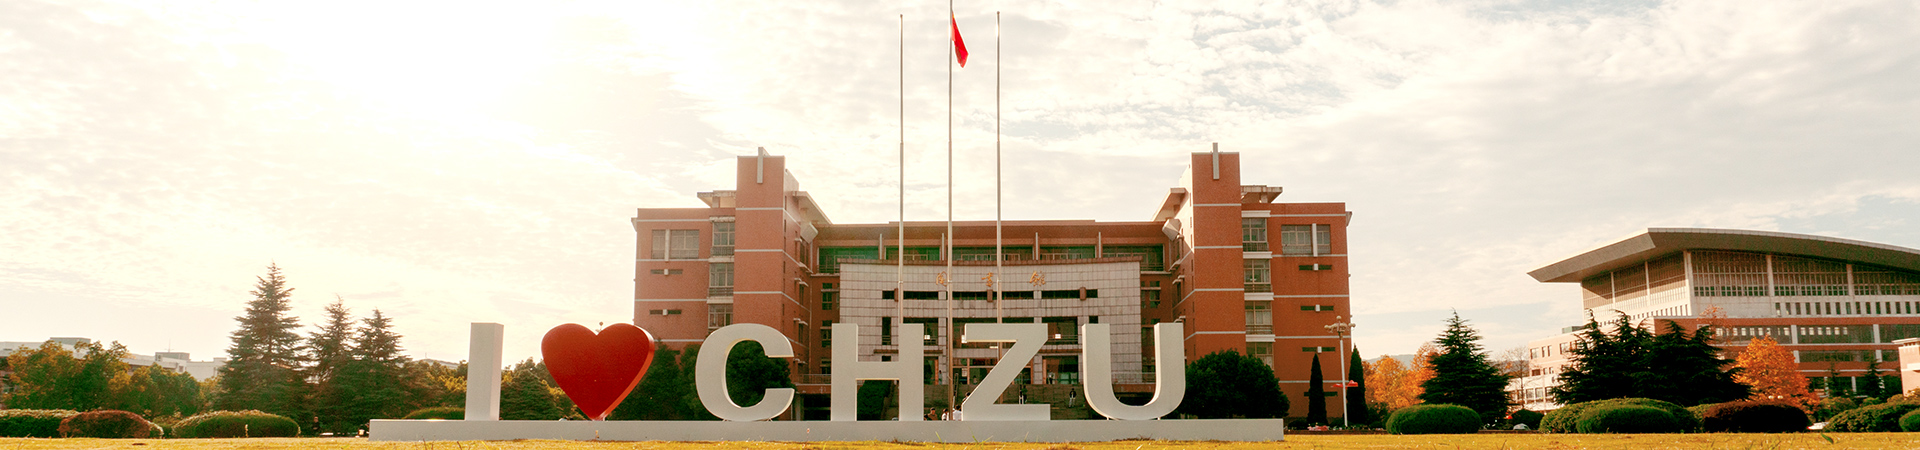 滁州学院2022年诚聘高层次人才公告